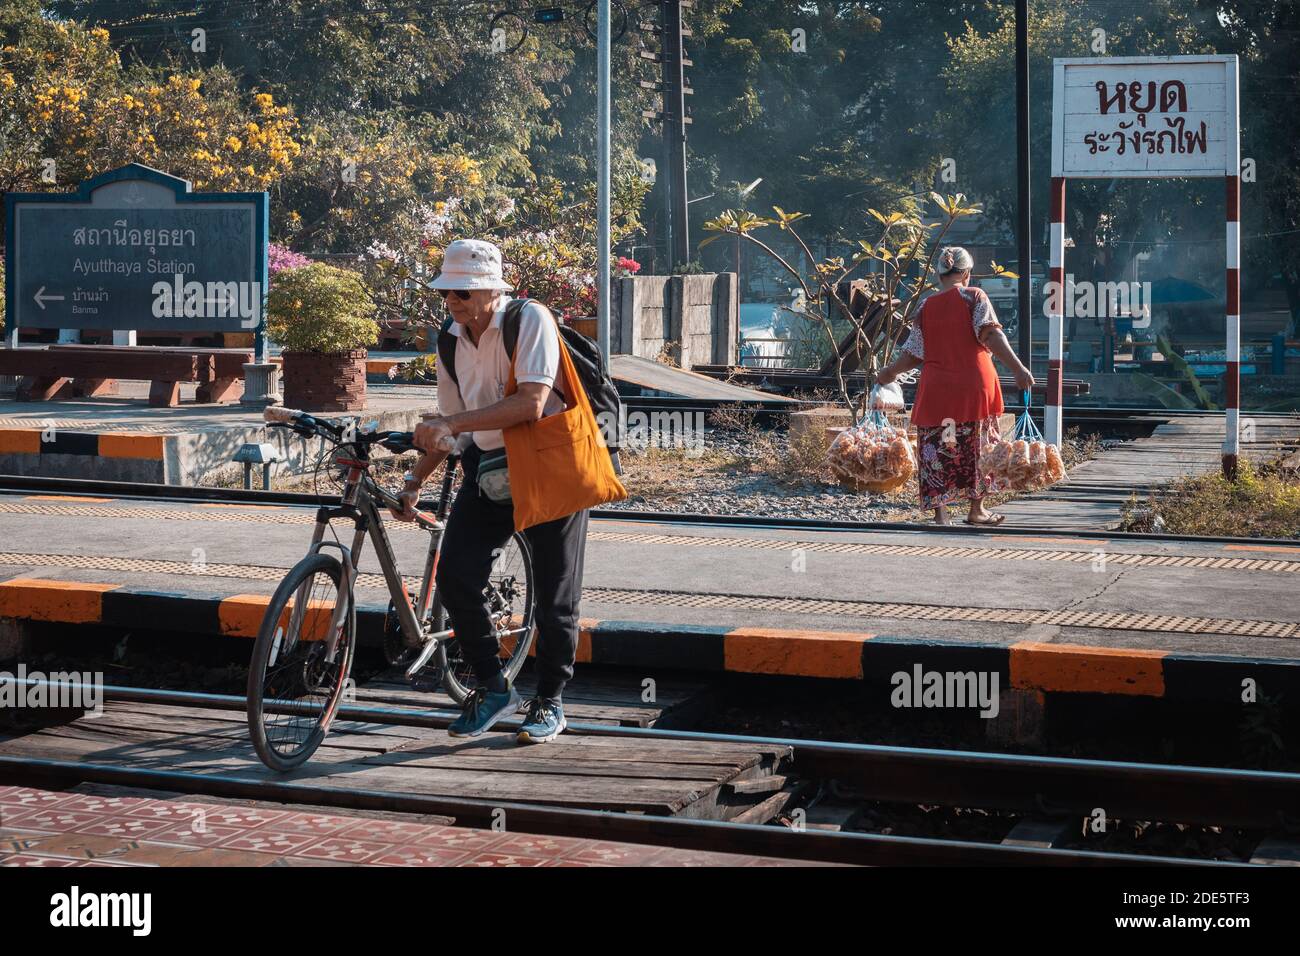 Thailandia; Feb 2020: Vita quotidiana in Thailandia, uomo tailandese che trasporta una bicicletta attraverso la ferrovia, vecchia donna tailandese che trasporta sacchetti di cibo per la vendita, attività mattutina Foto Stock